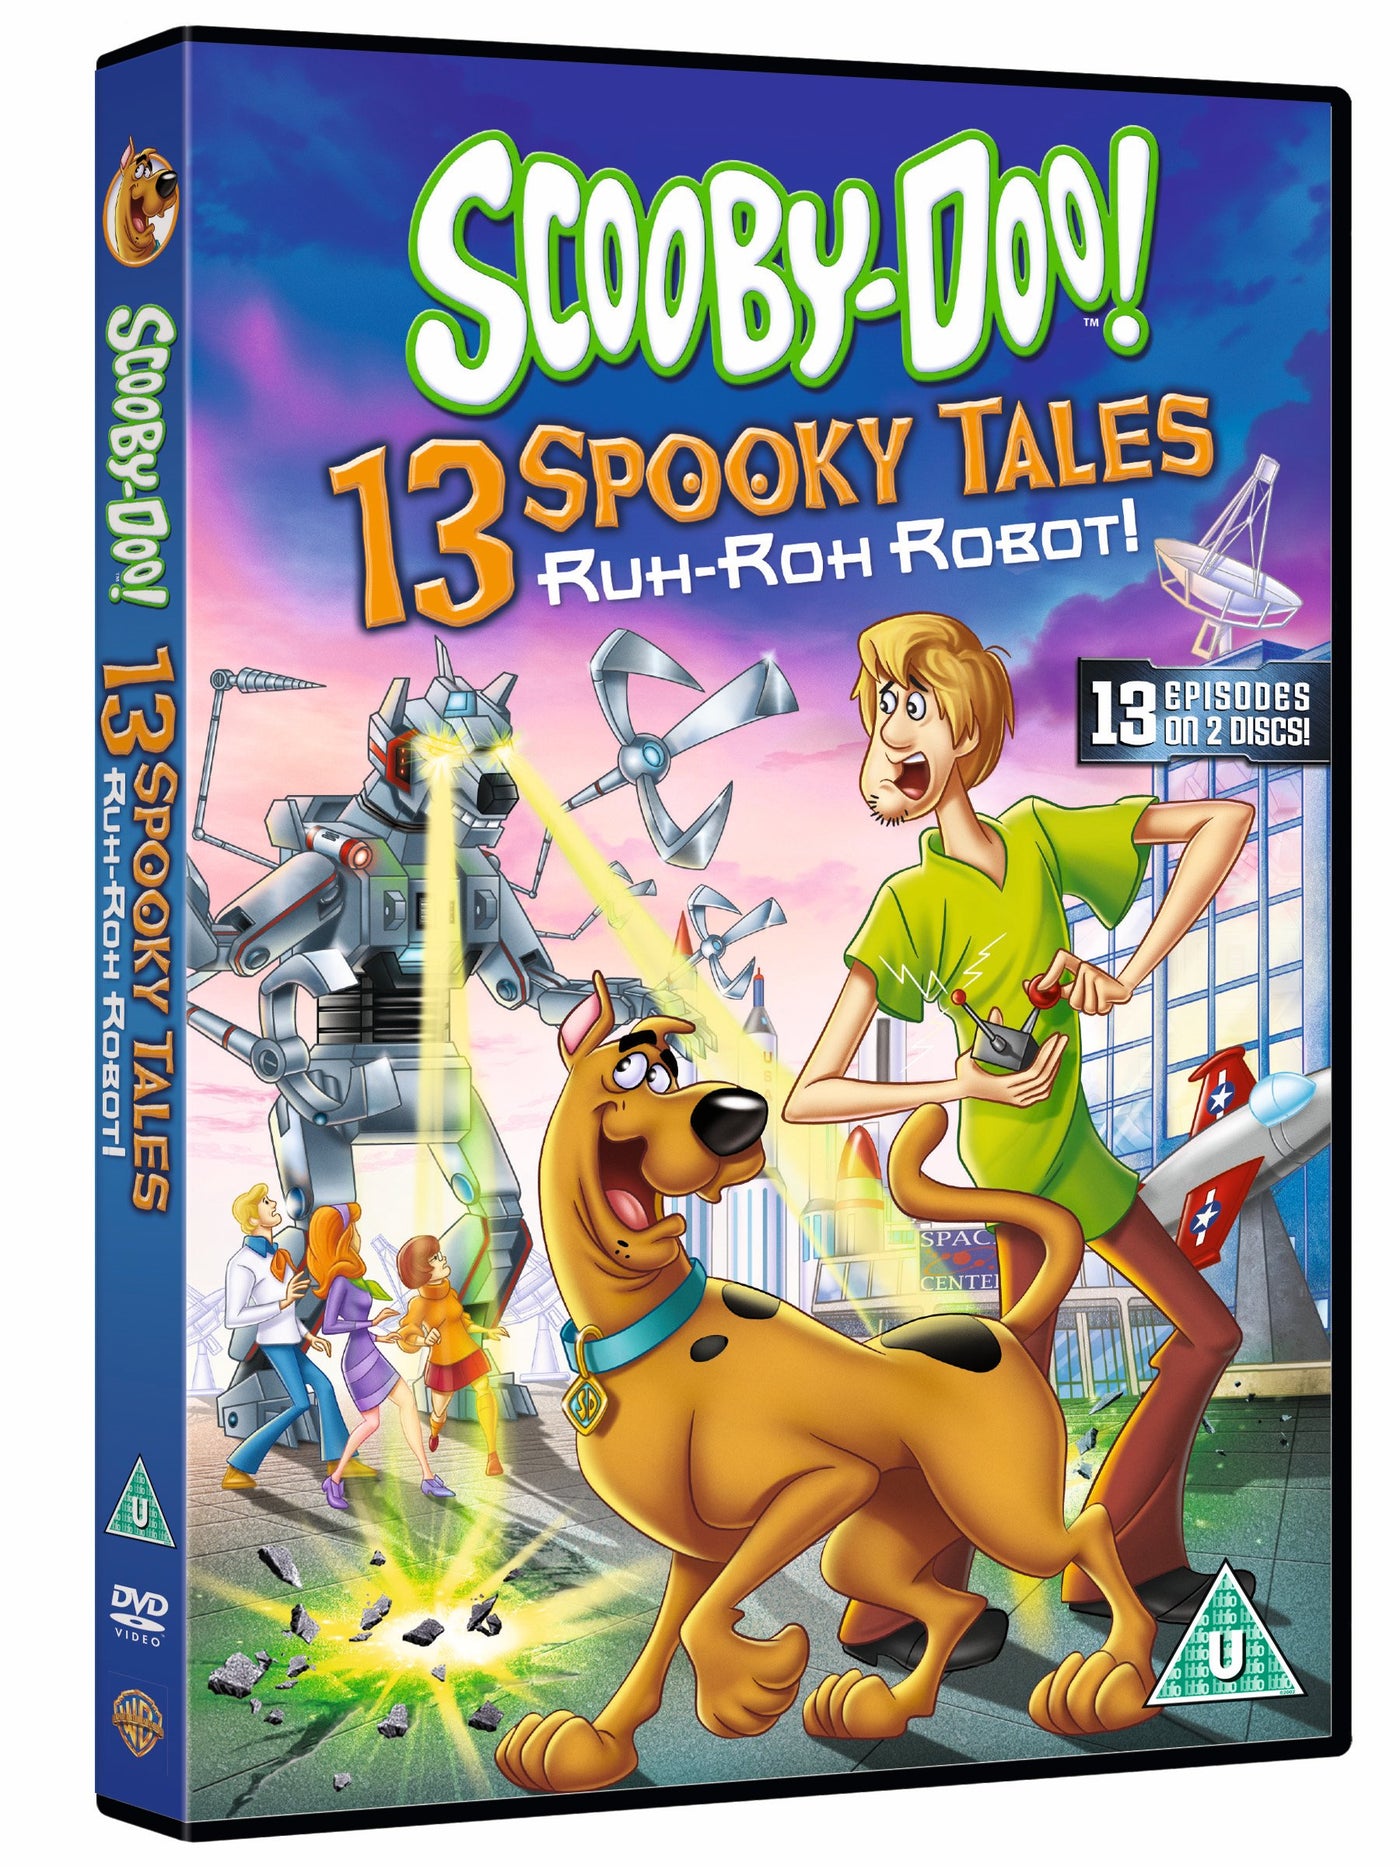 Scooby-Doo: 13 Spooky Tales - Ruh-Roh Robot! [2016] (DVD)